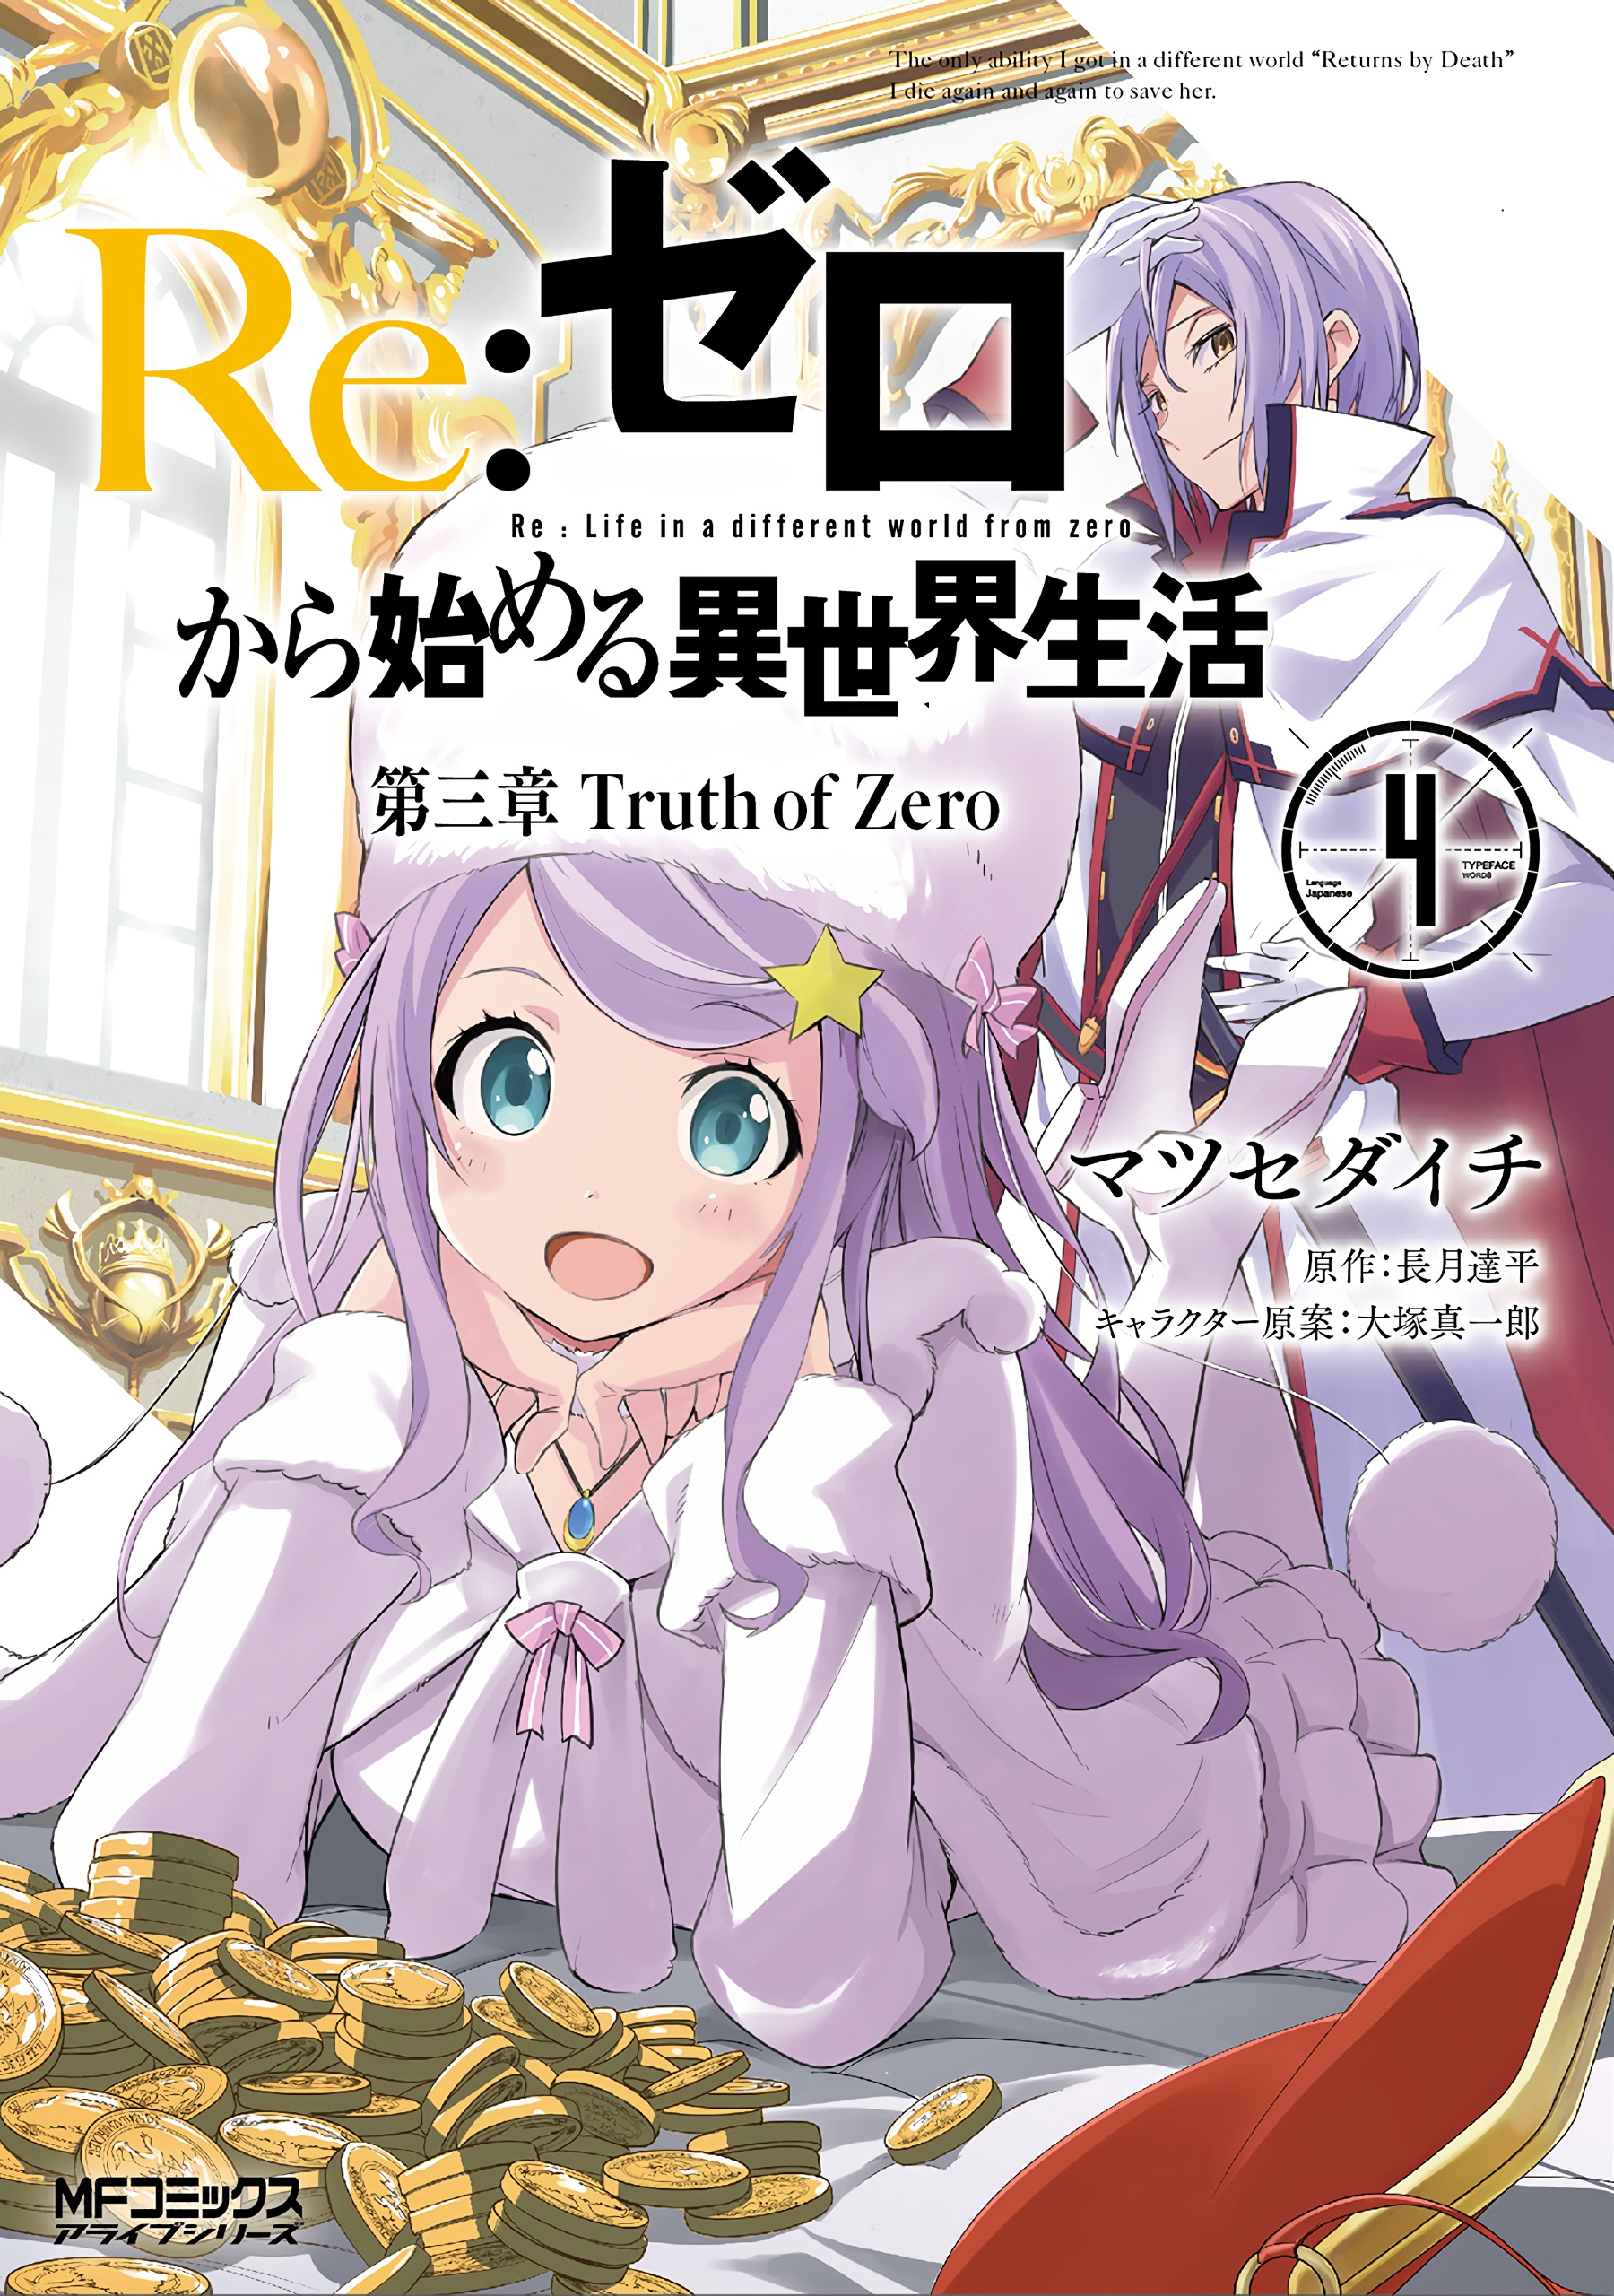 Re:Zero Light Novel Volume 3  Anime, Anime images, Japanese anime